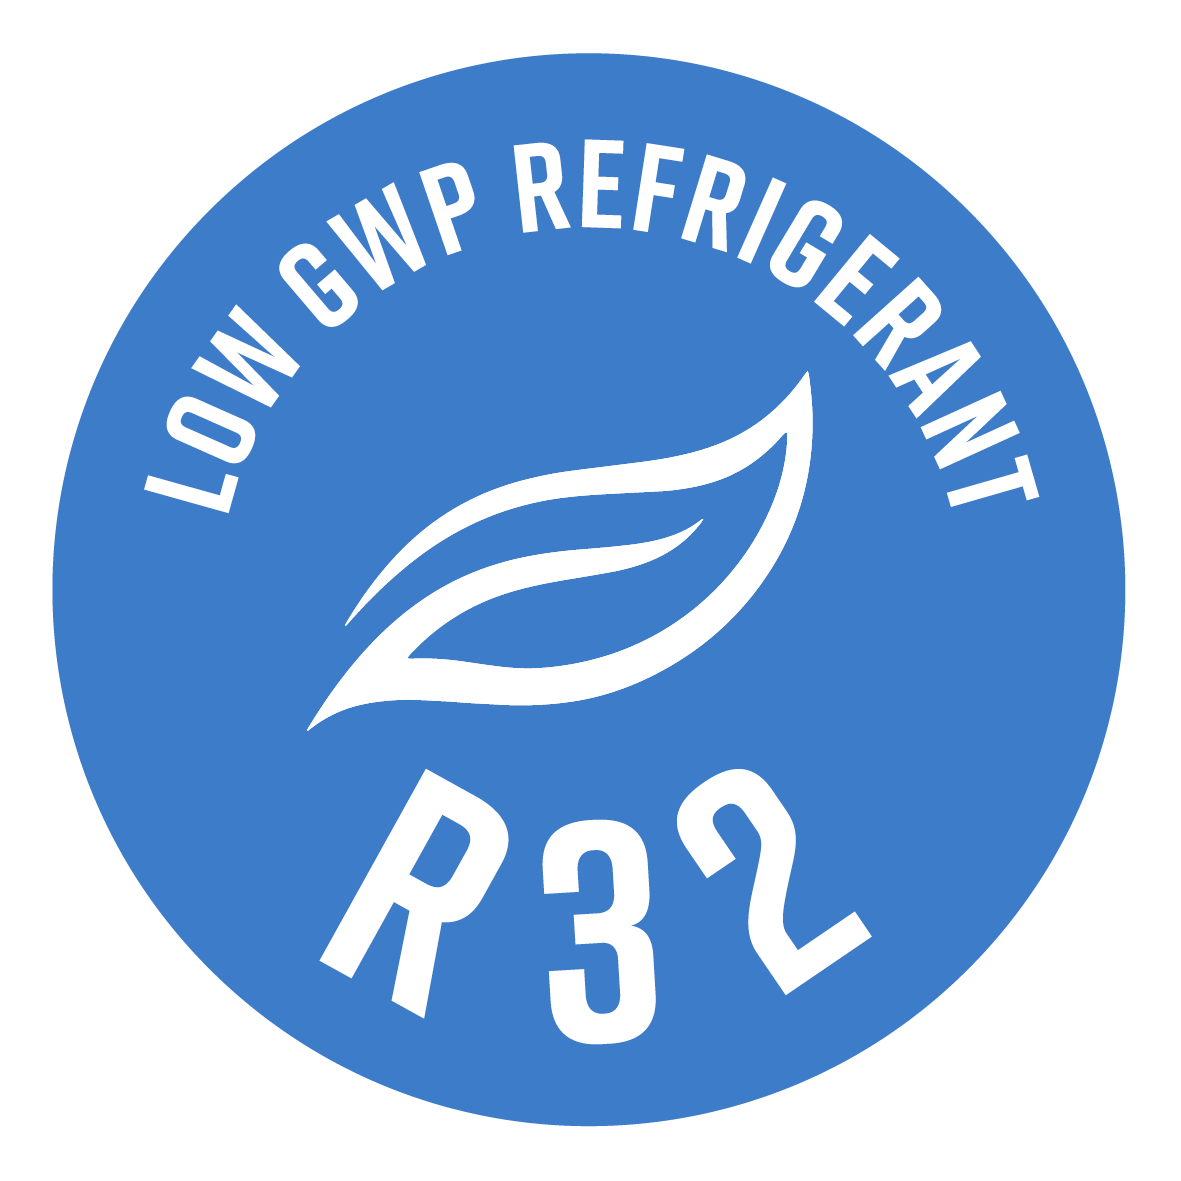 Todos los tamaños de potencia utilizan el refrigerante R32, caracterizado por una mayor eficiencia y un efecto invernadero reducido en casi el 70% (respecto al R410A).